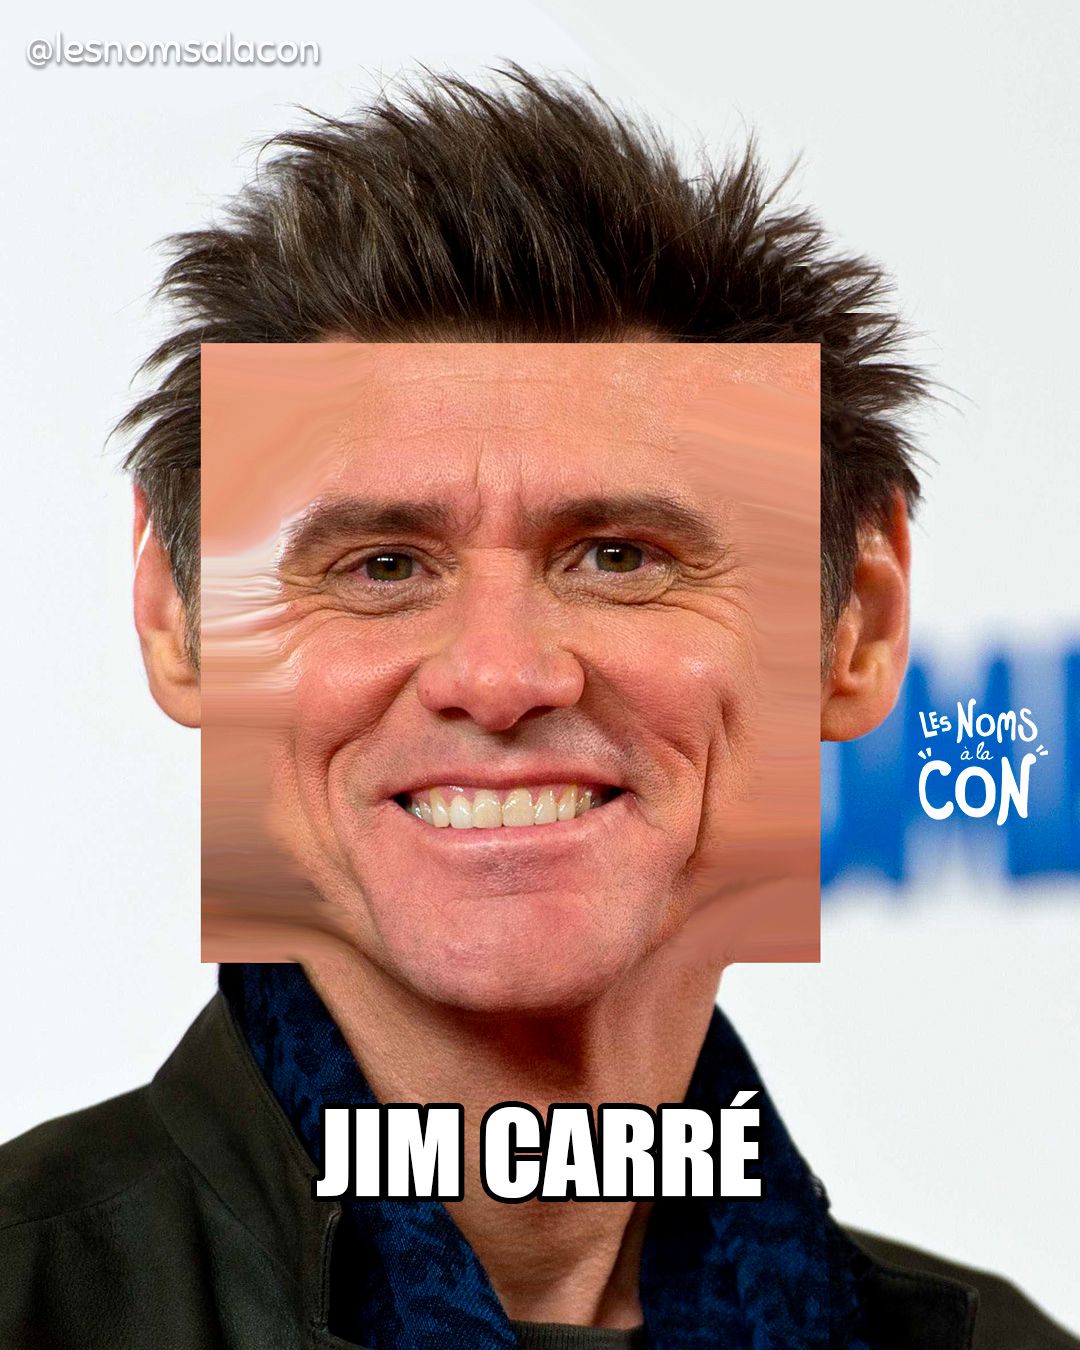 Jim Carré